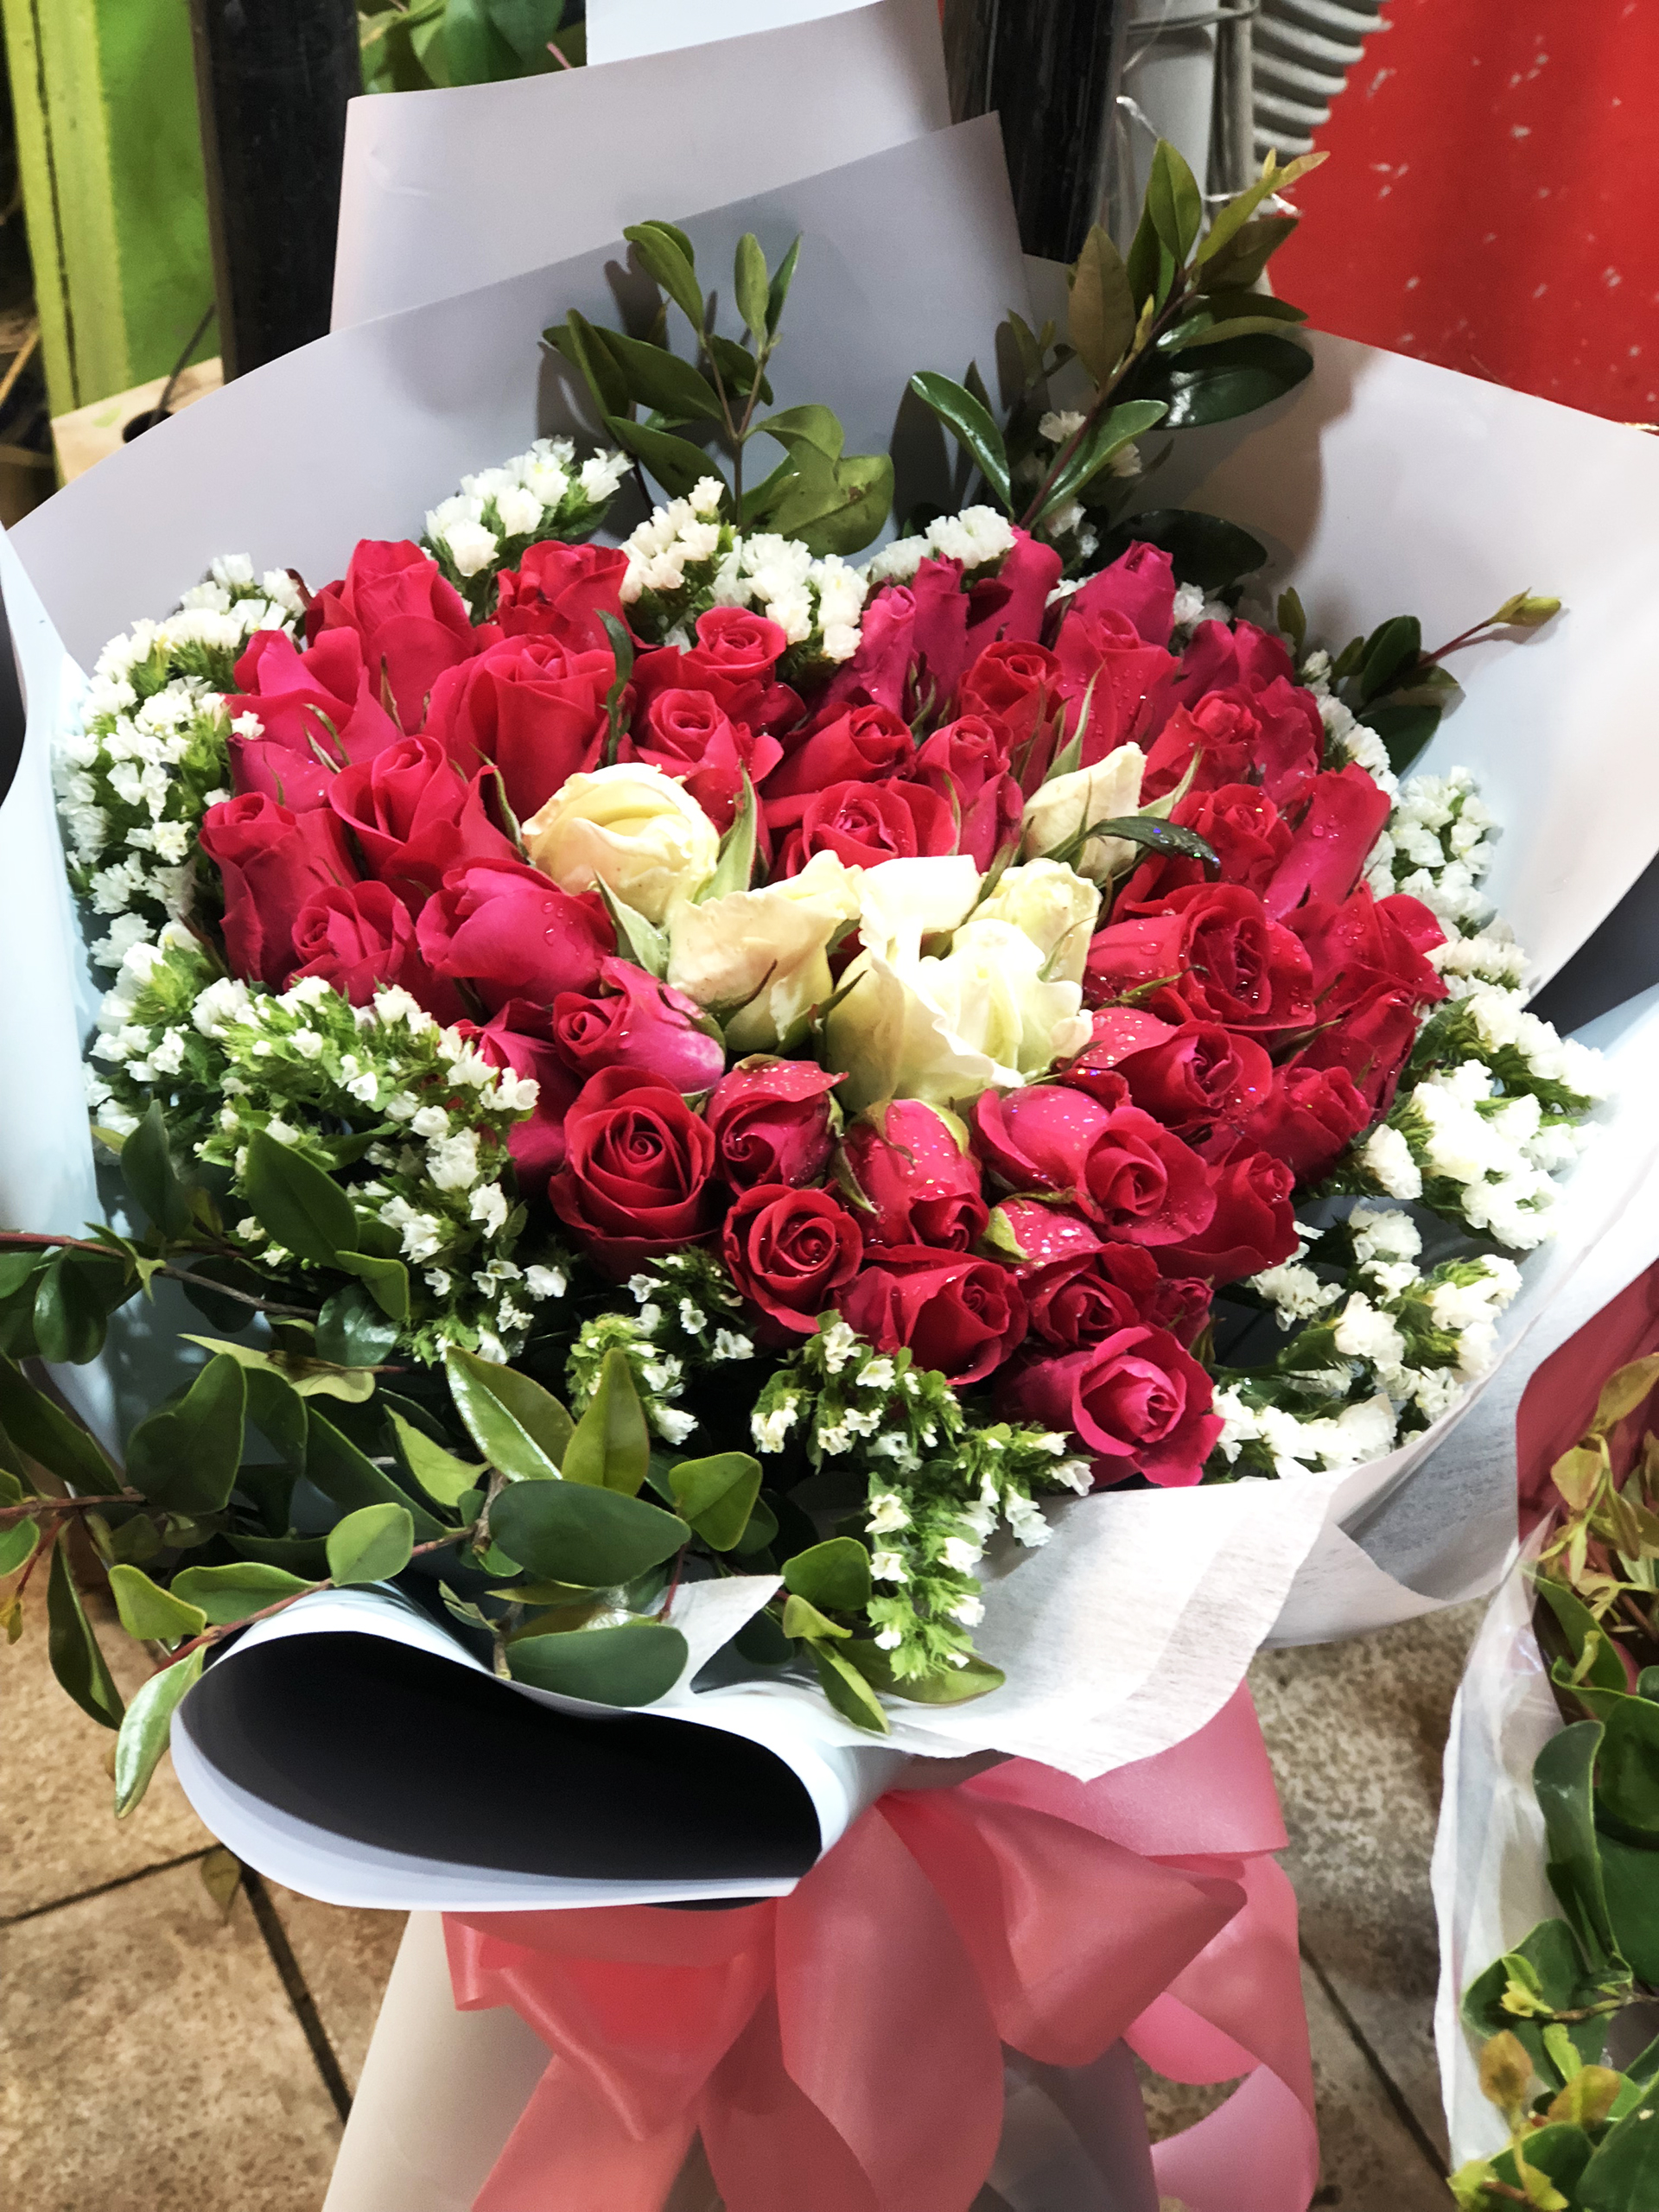 Hoa Valentine luôn là sự lựa chọn hoàn hảo để thể hiện tình yêu và lòng trân trọng của mình. Hãy dành thời gian để chiêm ngưỡng bức ảnh đẹp về hoa Valentine này và cùng tìm hiểu thêm về những mẹo nhỏ để chọn lựa loài hoa này đúng cách và gửi gắm đầy ý nghĩa.